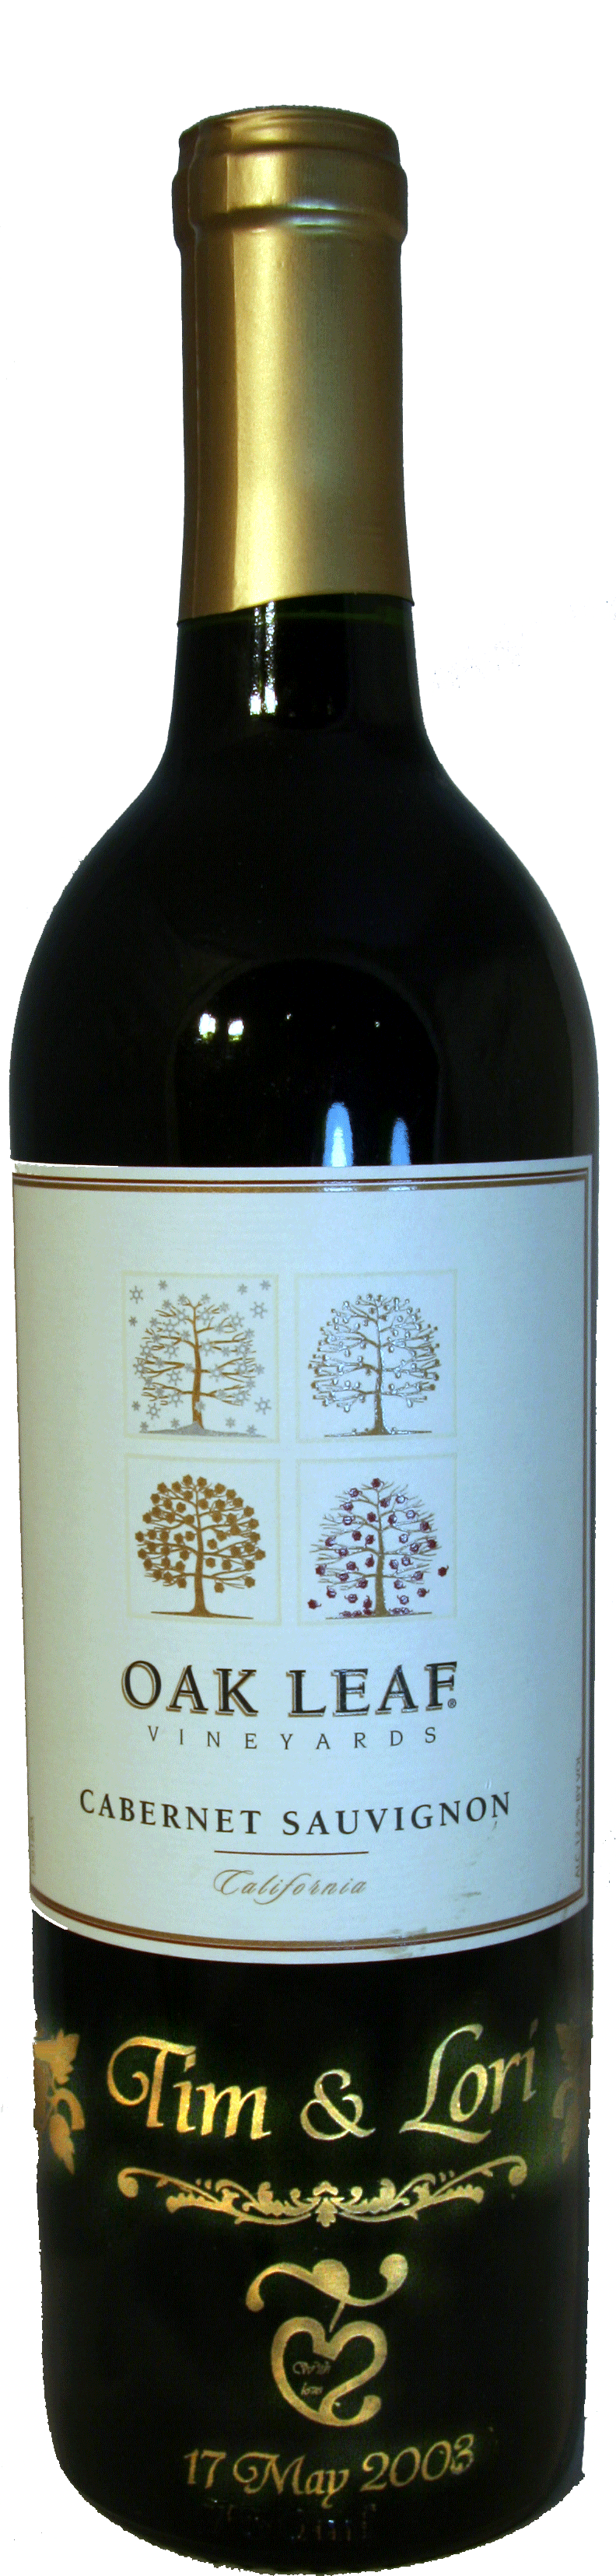 Laser Engraved Wine Bottle